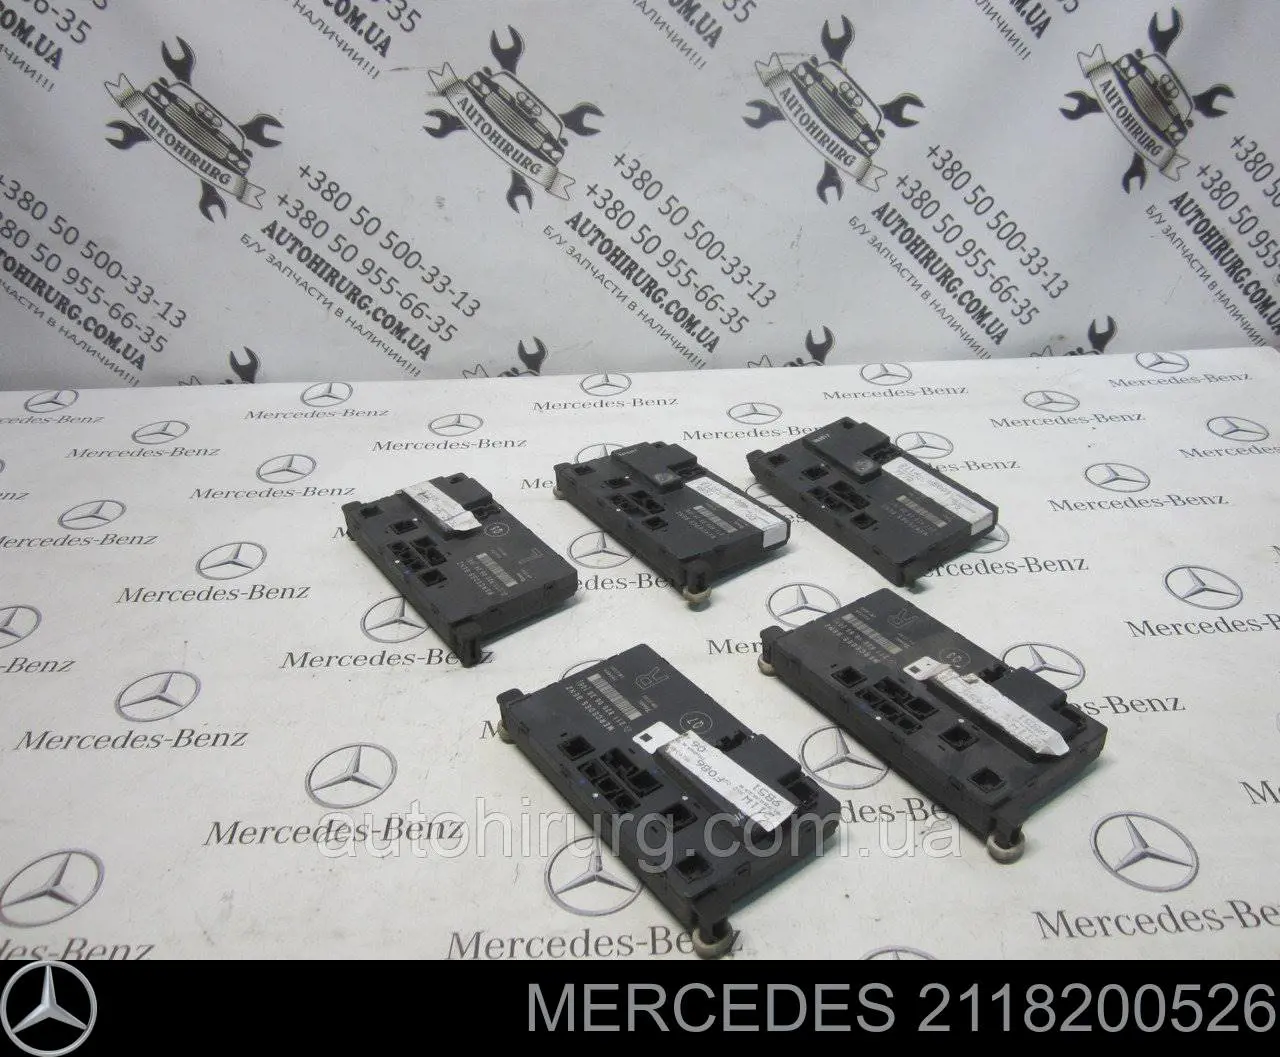 A2118701526 Mercedes unidade de conforto